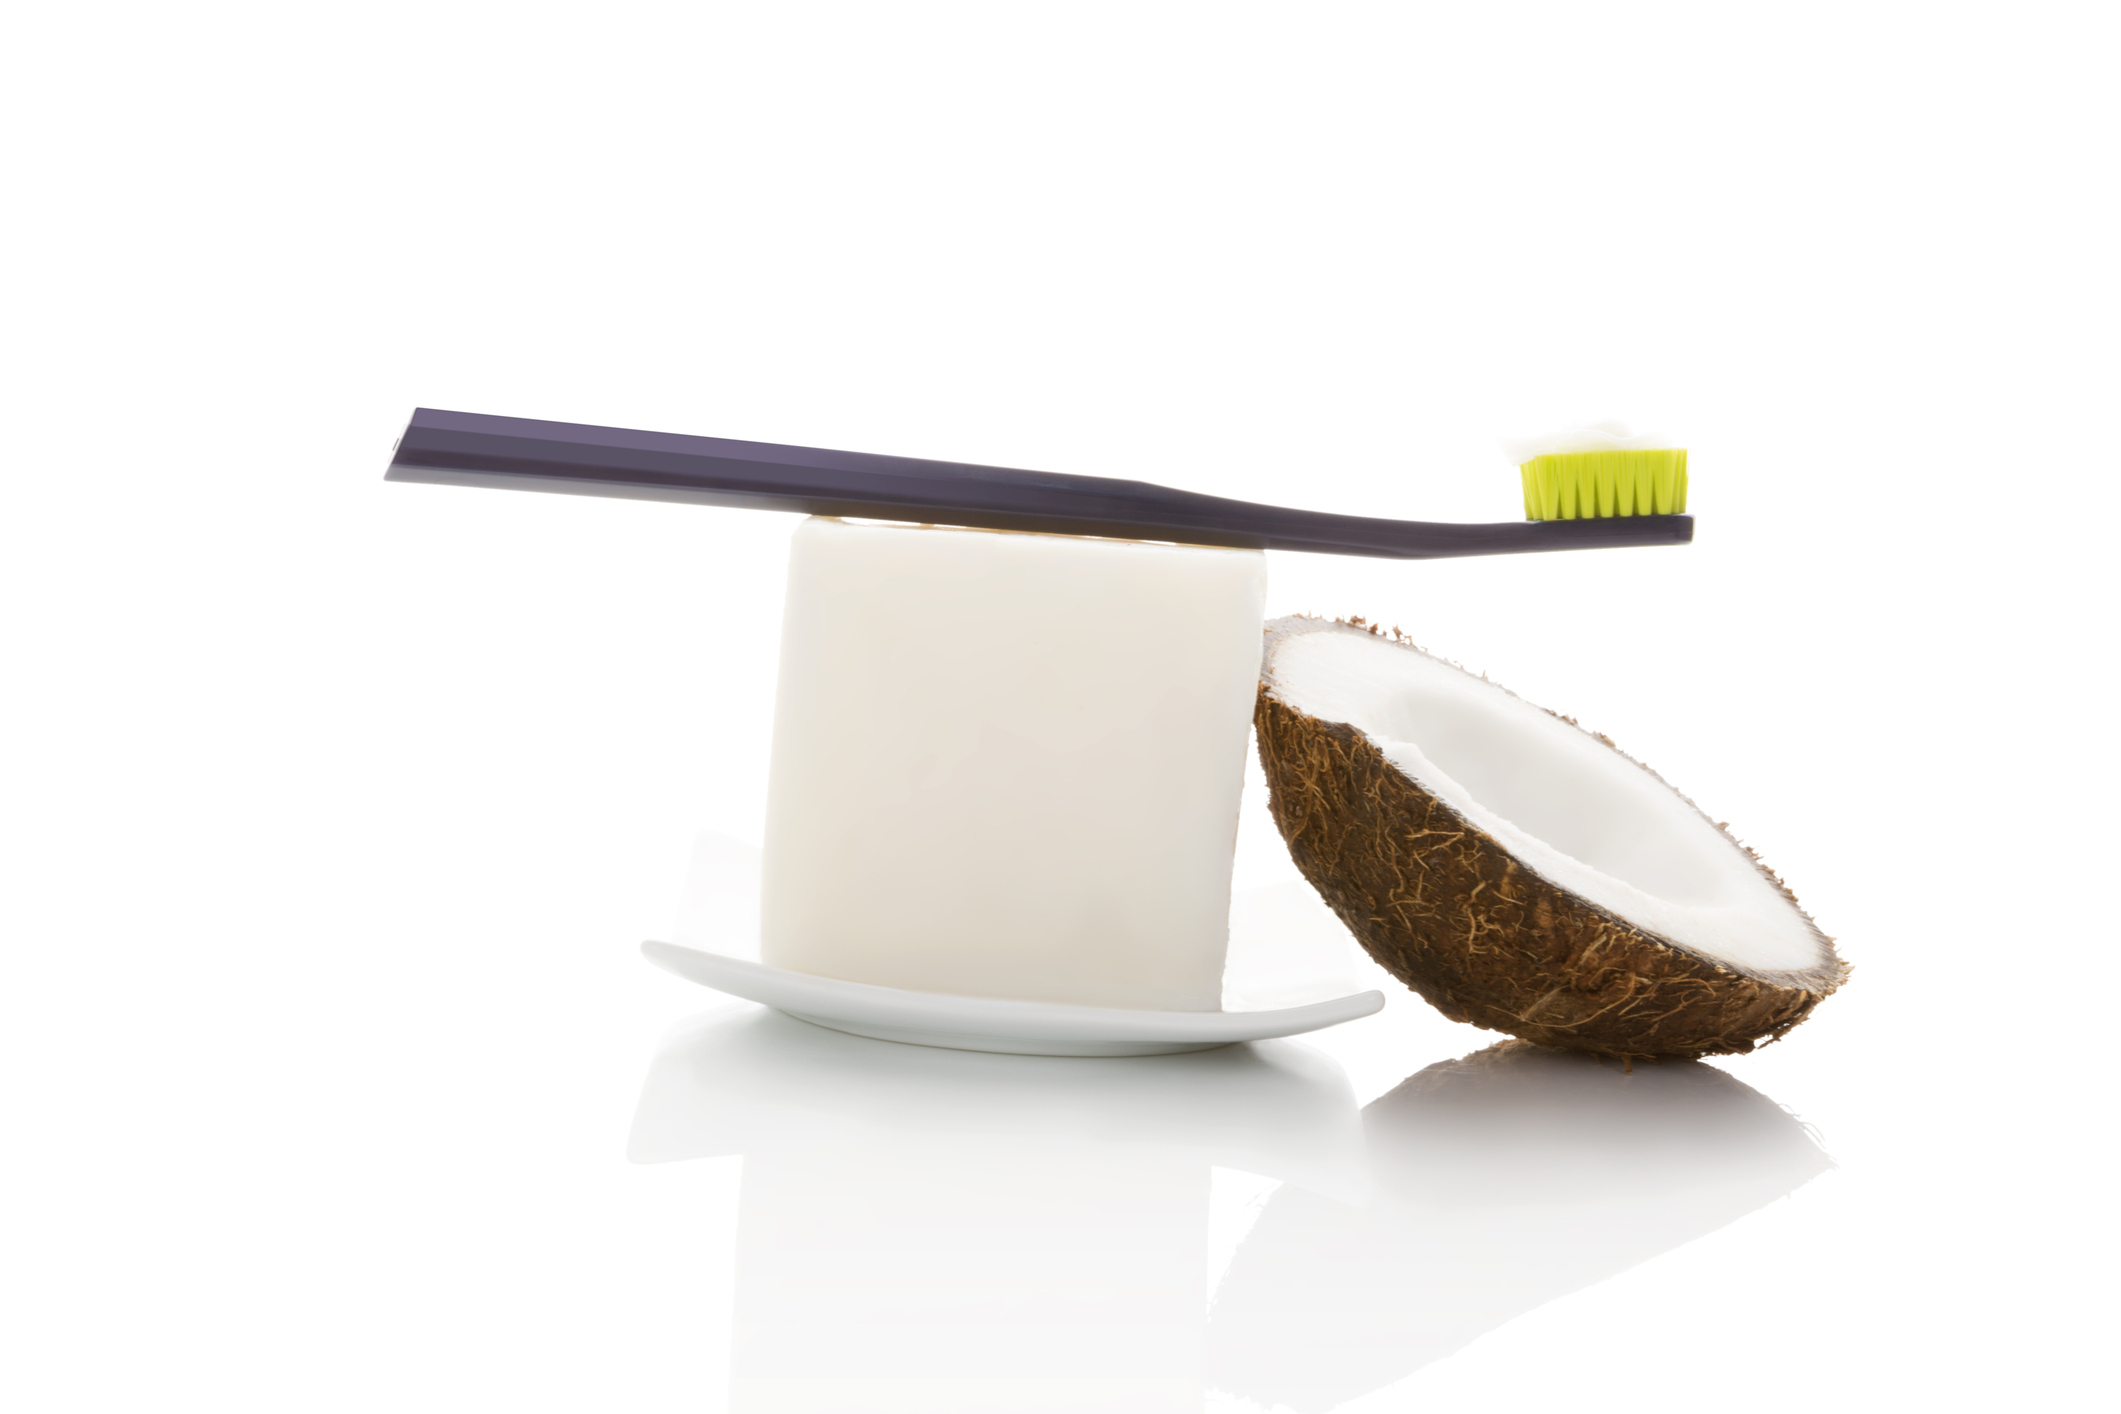 За бели зъби и здрави венци<br />
Освен всико друго, знаехте ли, че кокосовото масло спомага и за по-белите ни и здрави зъби? То няма свойствата да ги избелва толкова, колкото да ги поддържа бели и чисти. Това се дължи на лауриновата киселина в състава на кокосовото масло. Тя спомага за това зъбите и изначално устната ни кухина да са чисти, без бактерии и плака, заздравява и венците ни.<br />
Ето защо бихте могли сутрин да си правите гаргара с 1 с.л. кокосово масло.